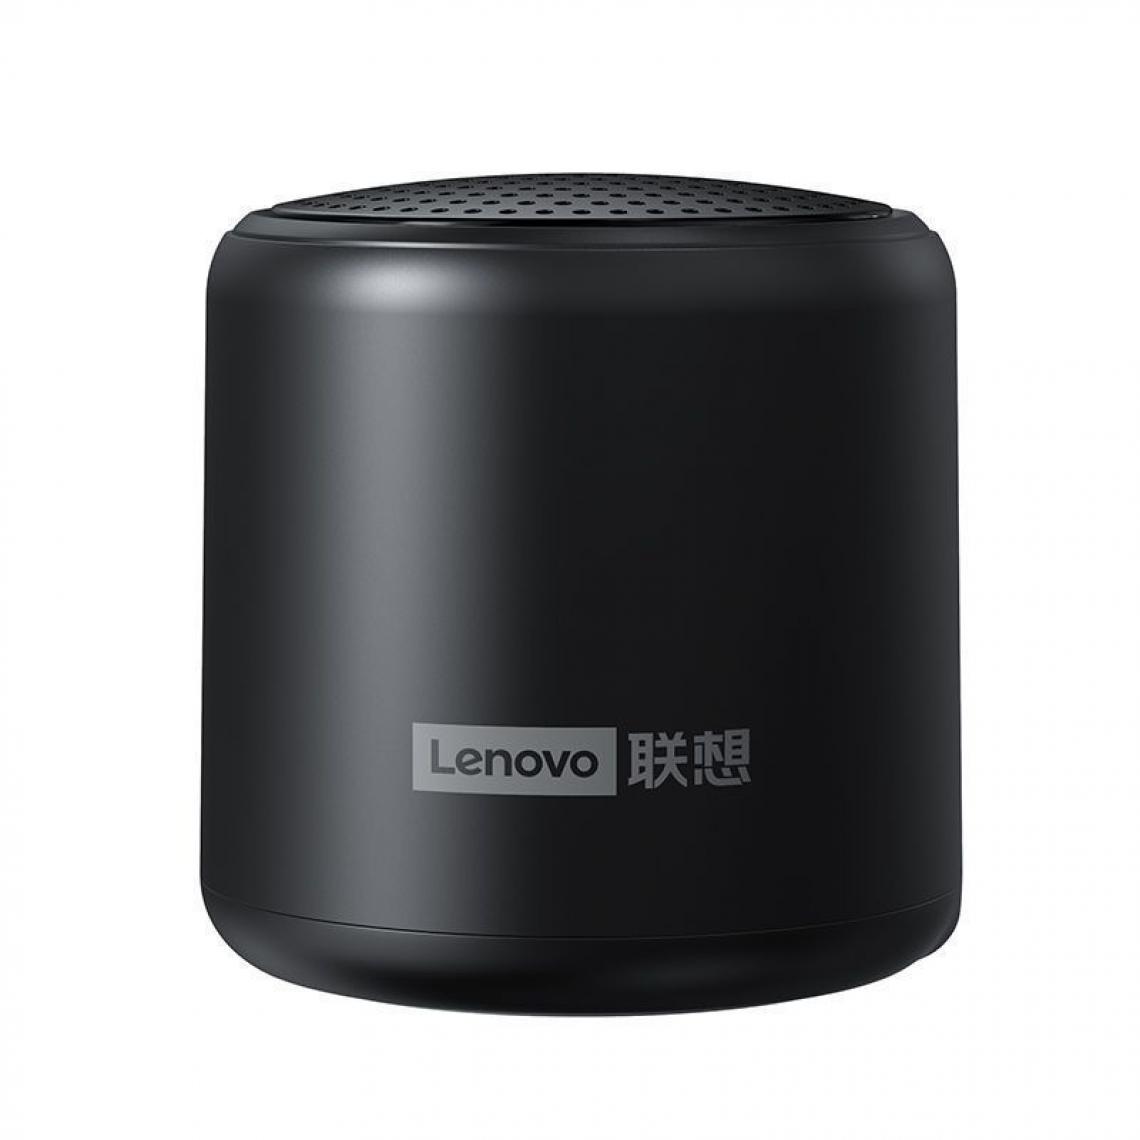 Generic -  Enceinte Portable  Lenovo L01, sans fil Bluetooth TWS étanche avec stéréo, basse surround , Compatibles avec Android, iPhone et Ordinateurs Portable  4.8 * 4.8 * 4.5 cm - Noir  - Hauts-parleurs